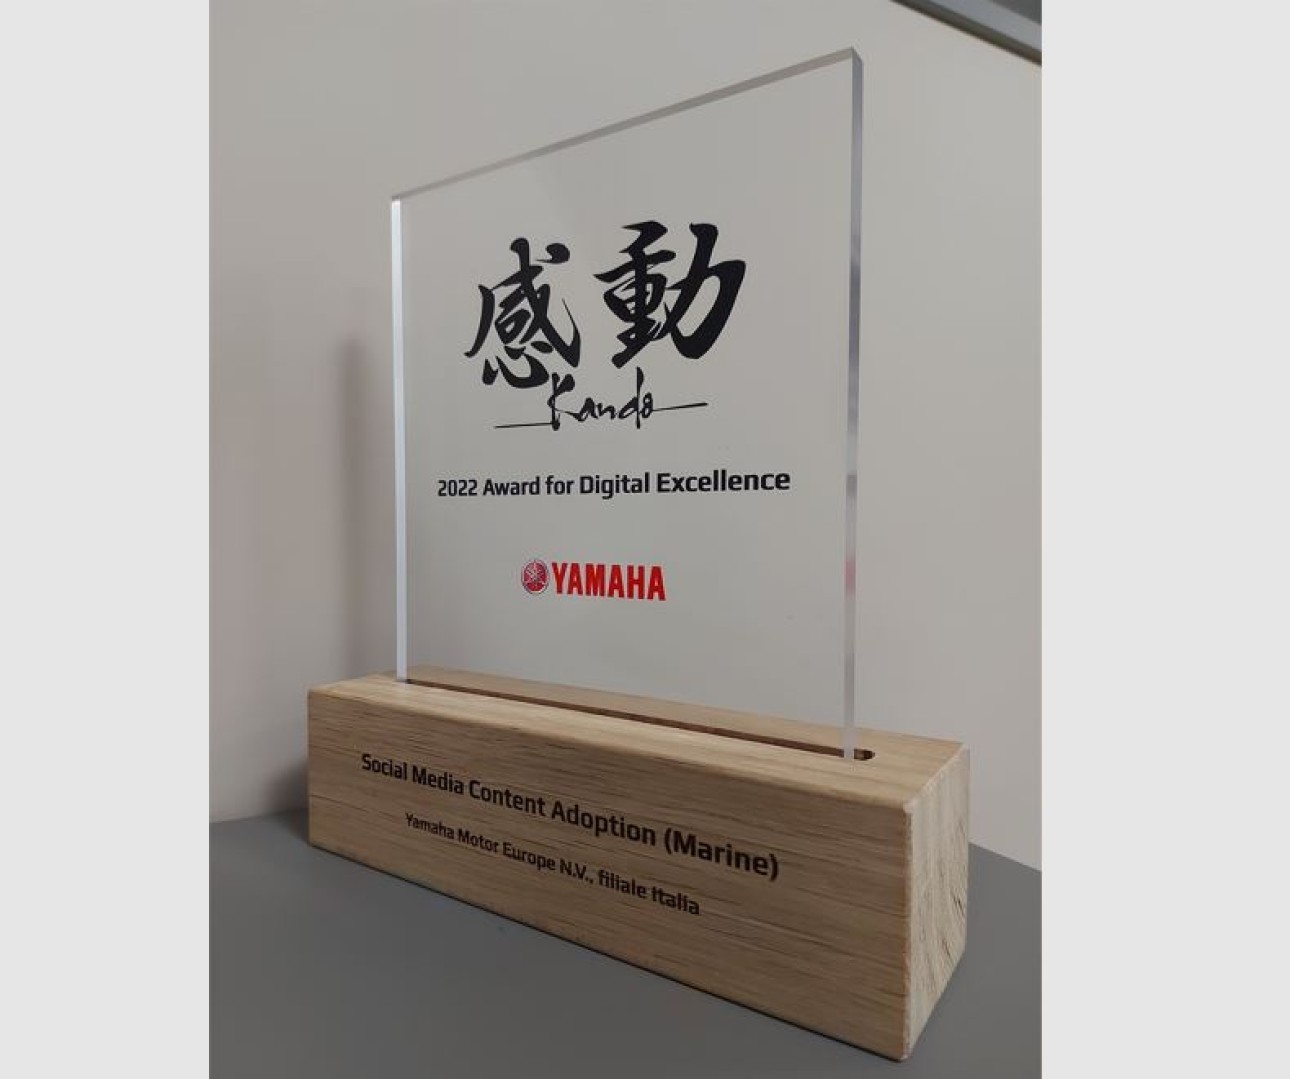 Yamaha award for Digital Excellence